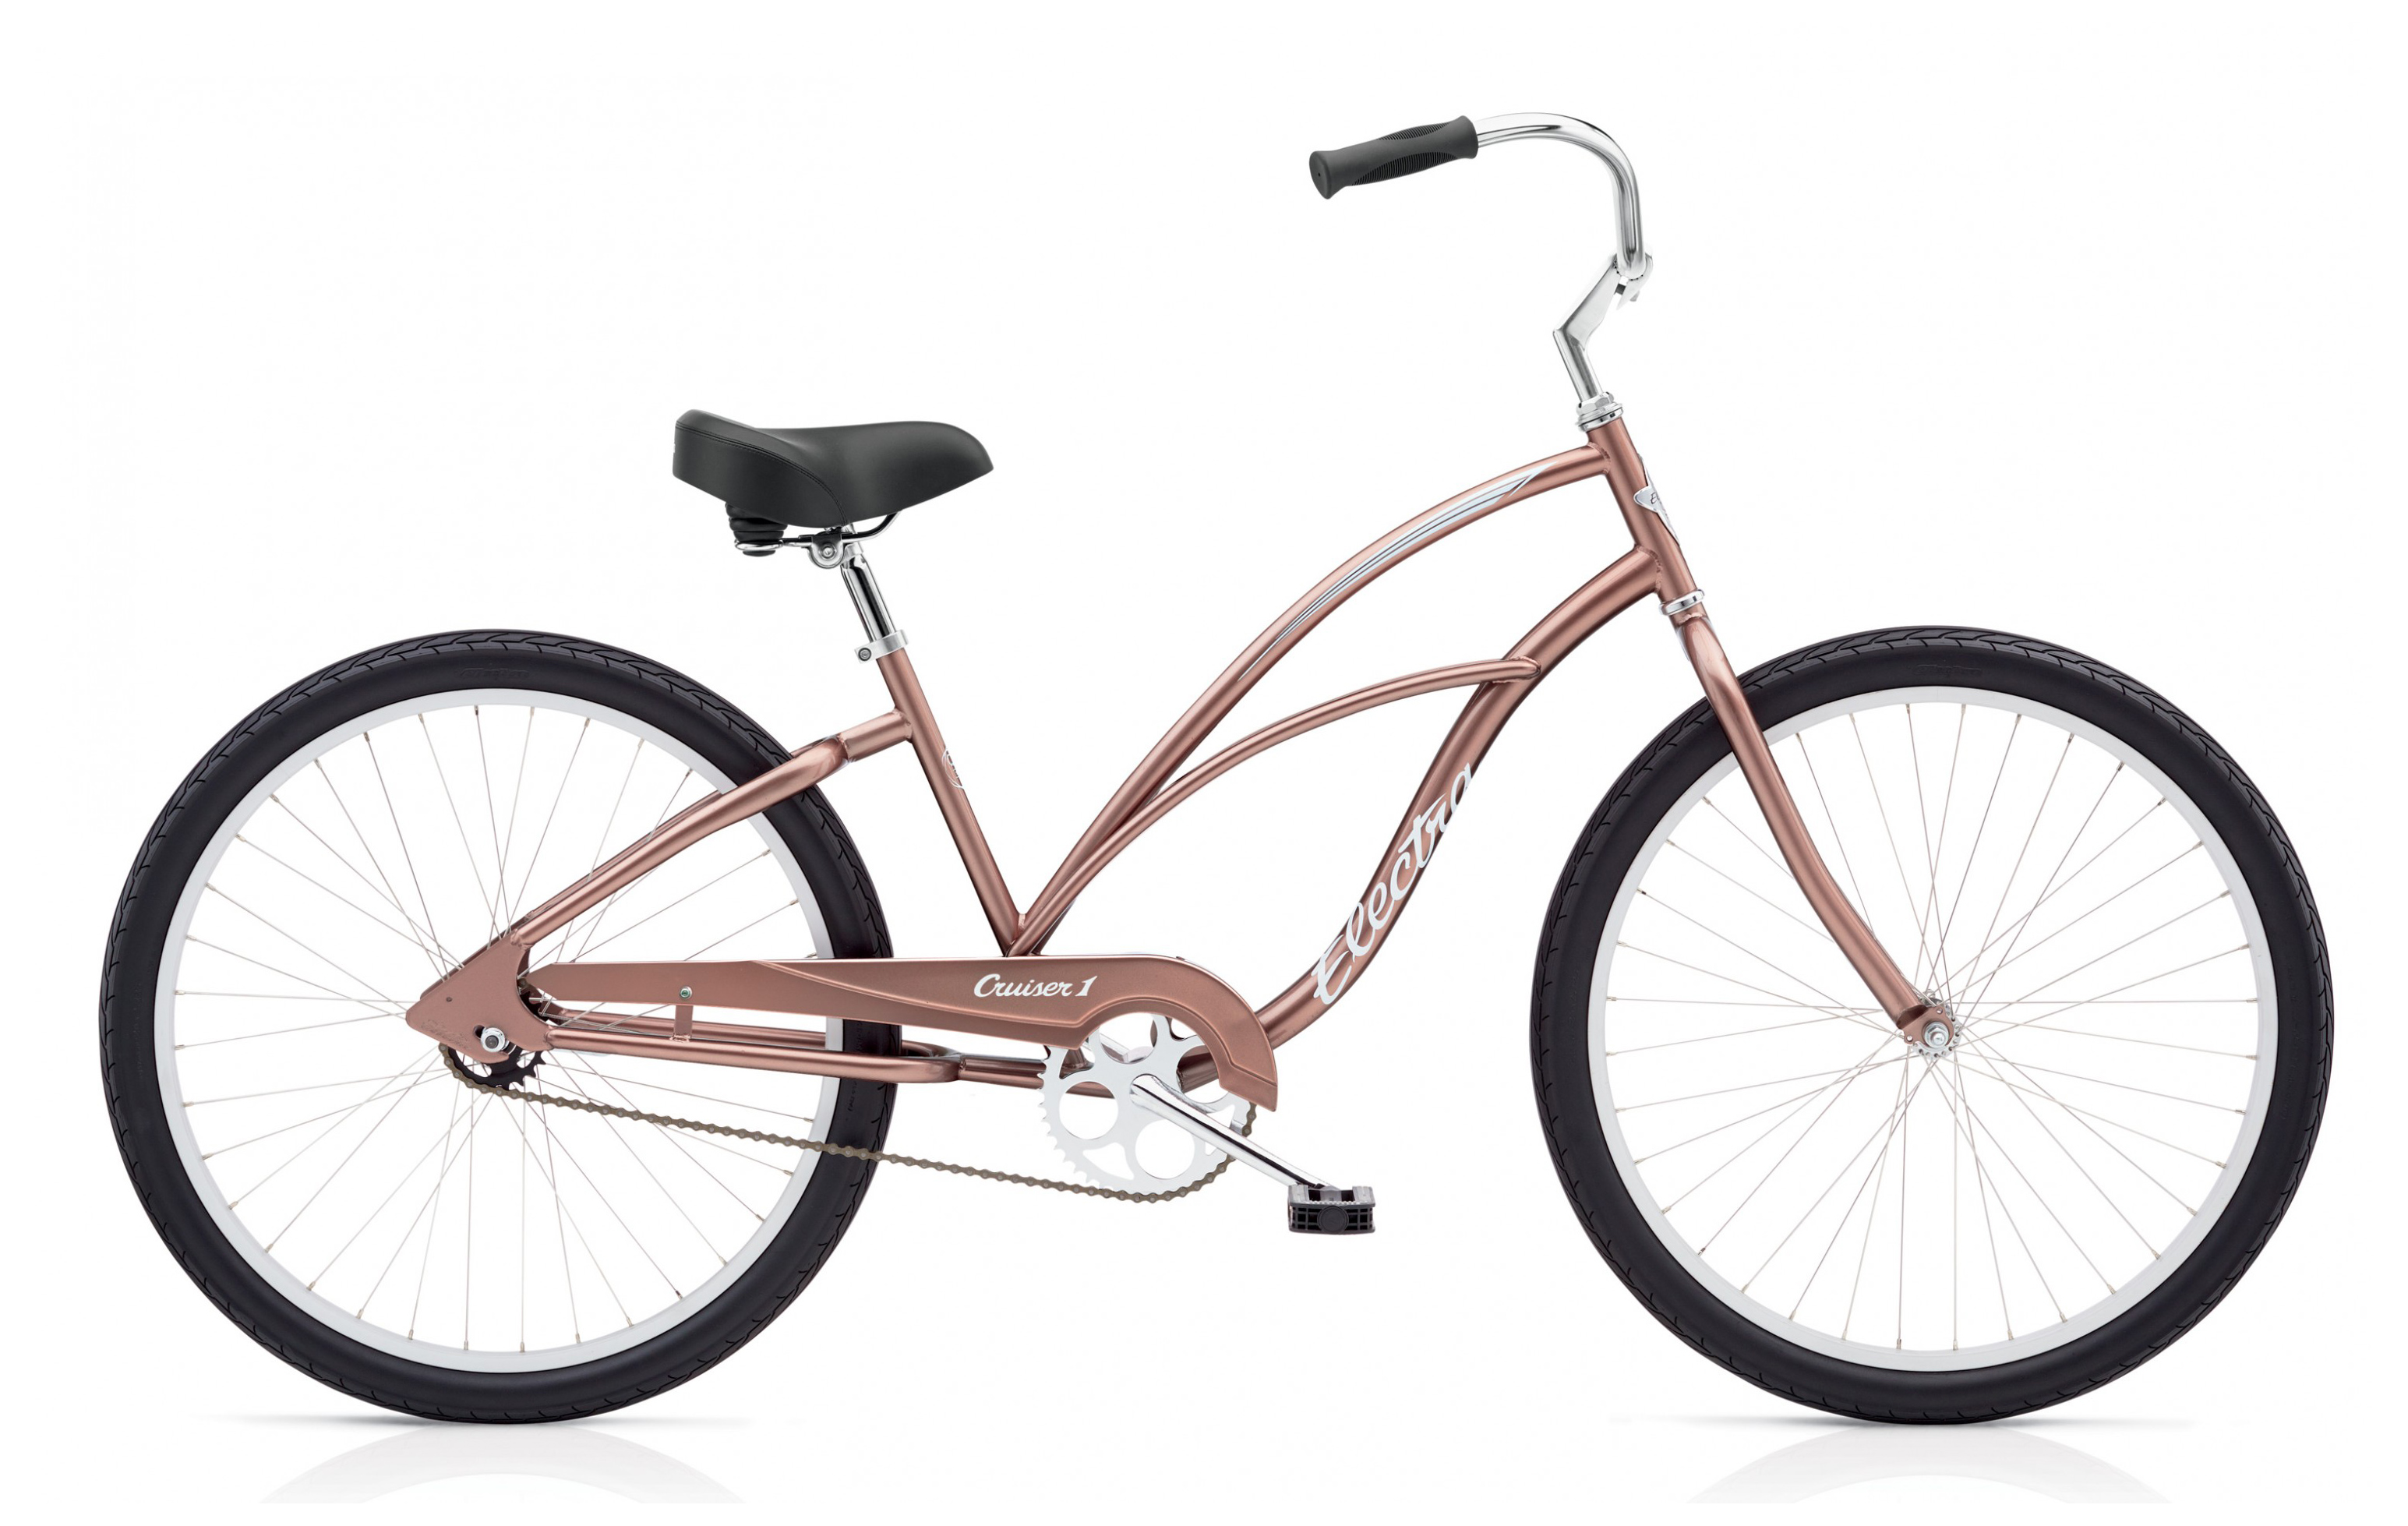  Велосипед Electra Cruiser 1 NON-US ladies 2019